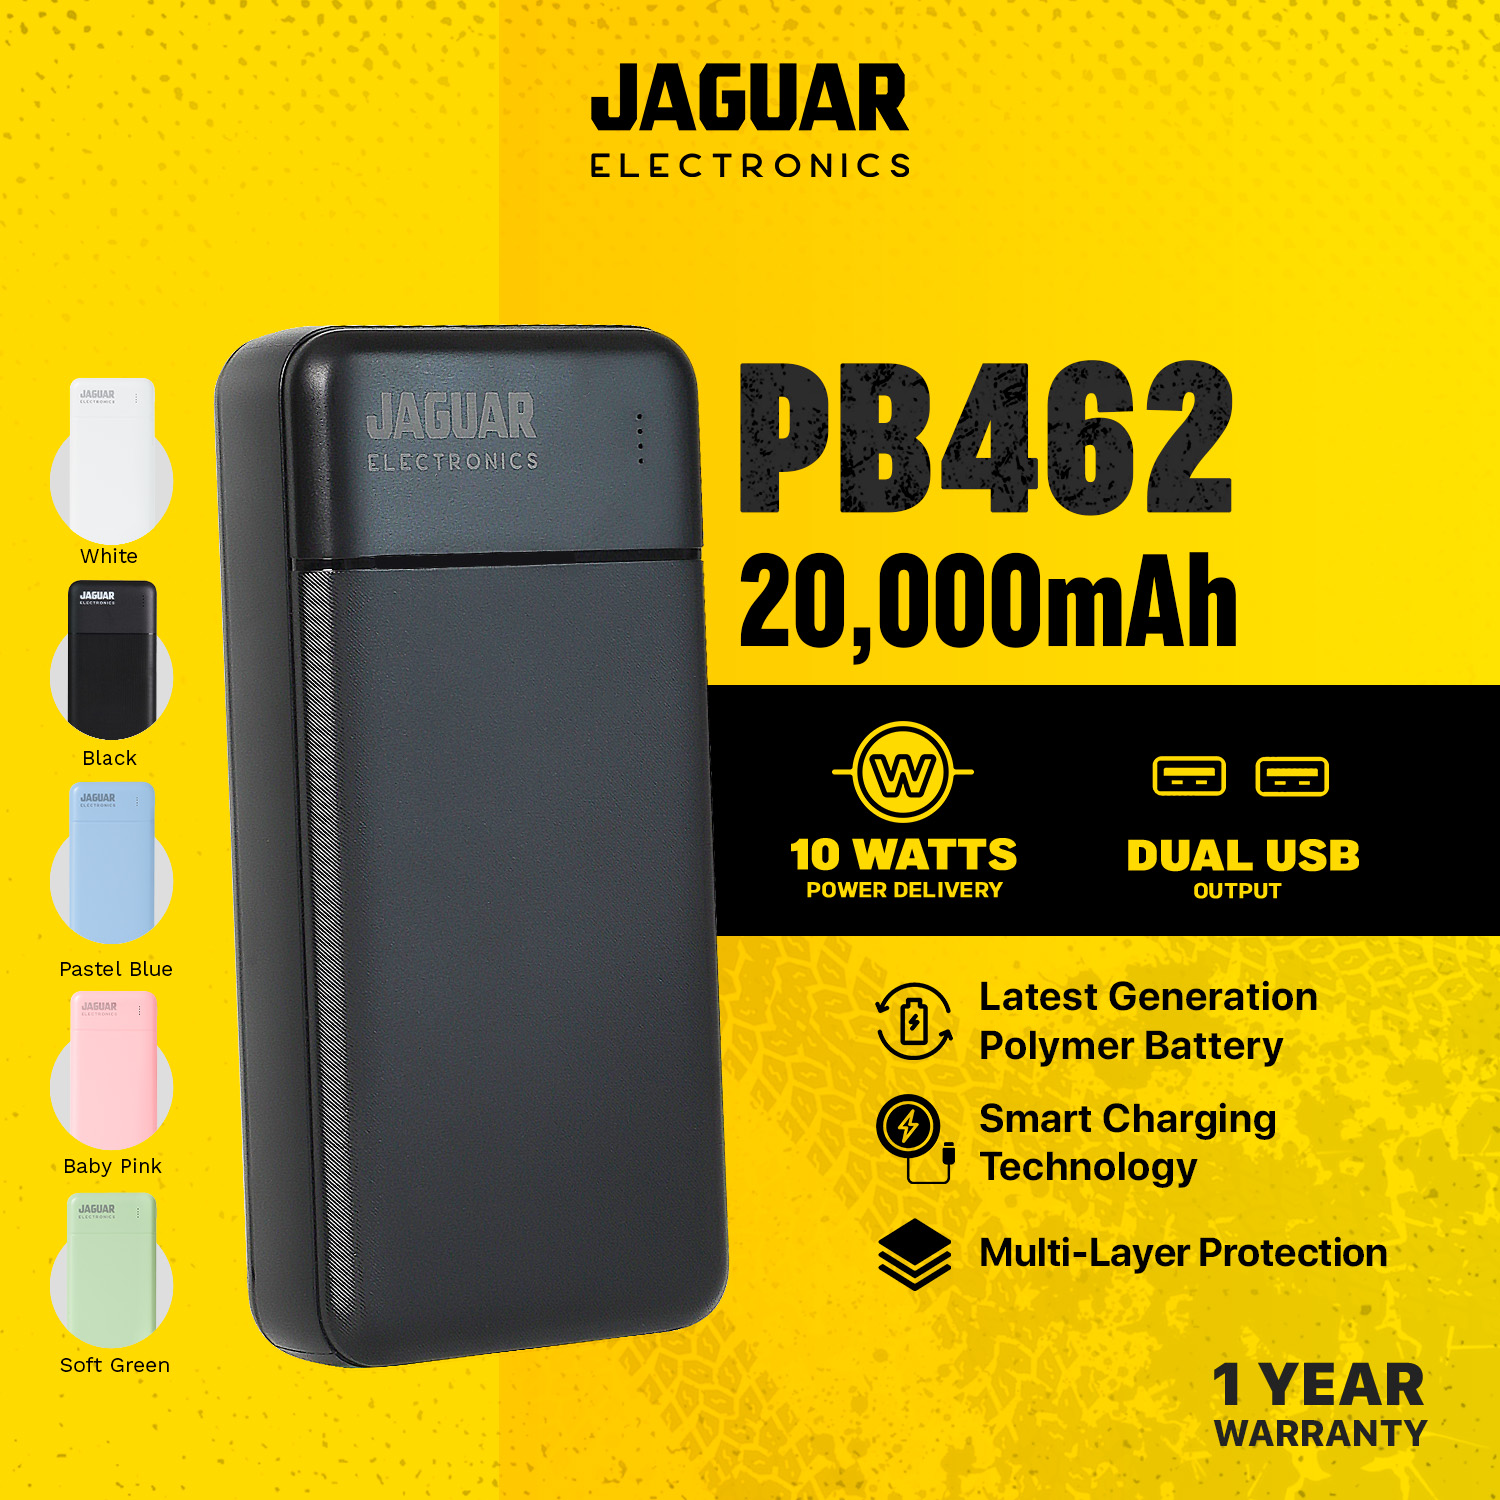 JAGUAR ELECTRONICS PB462 20000mAh Power Bank Dual USB Output